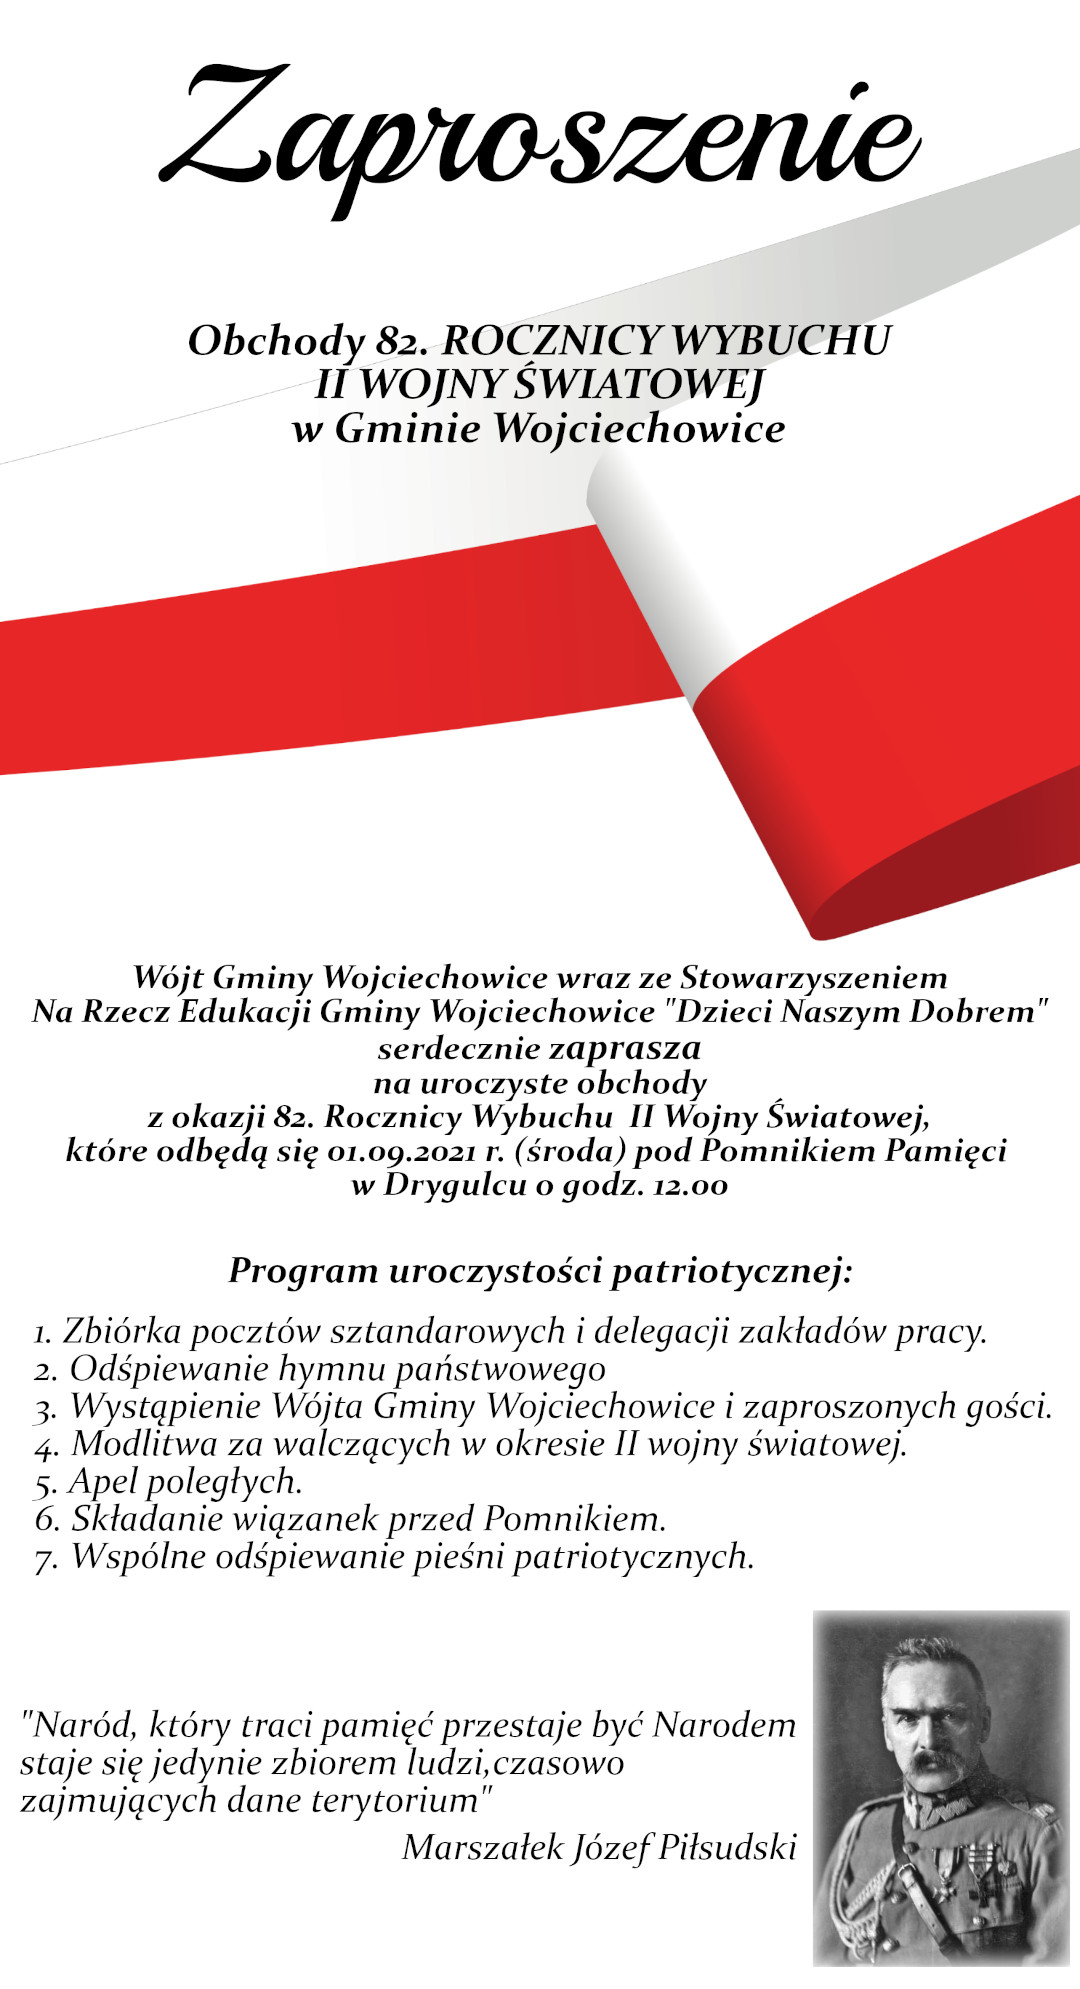 Grafika z zaproszeniem i informacjami dotyczącymi Obchodów 82. ROCZNICY WYBUCHU II WOJNY ŚWIATOWEJ w Gminie Wojciechowice